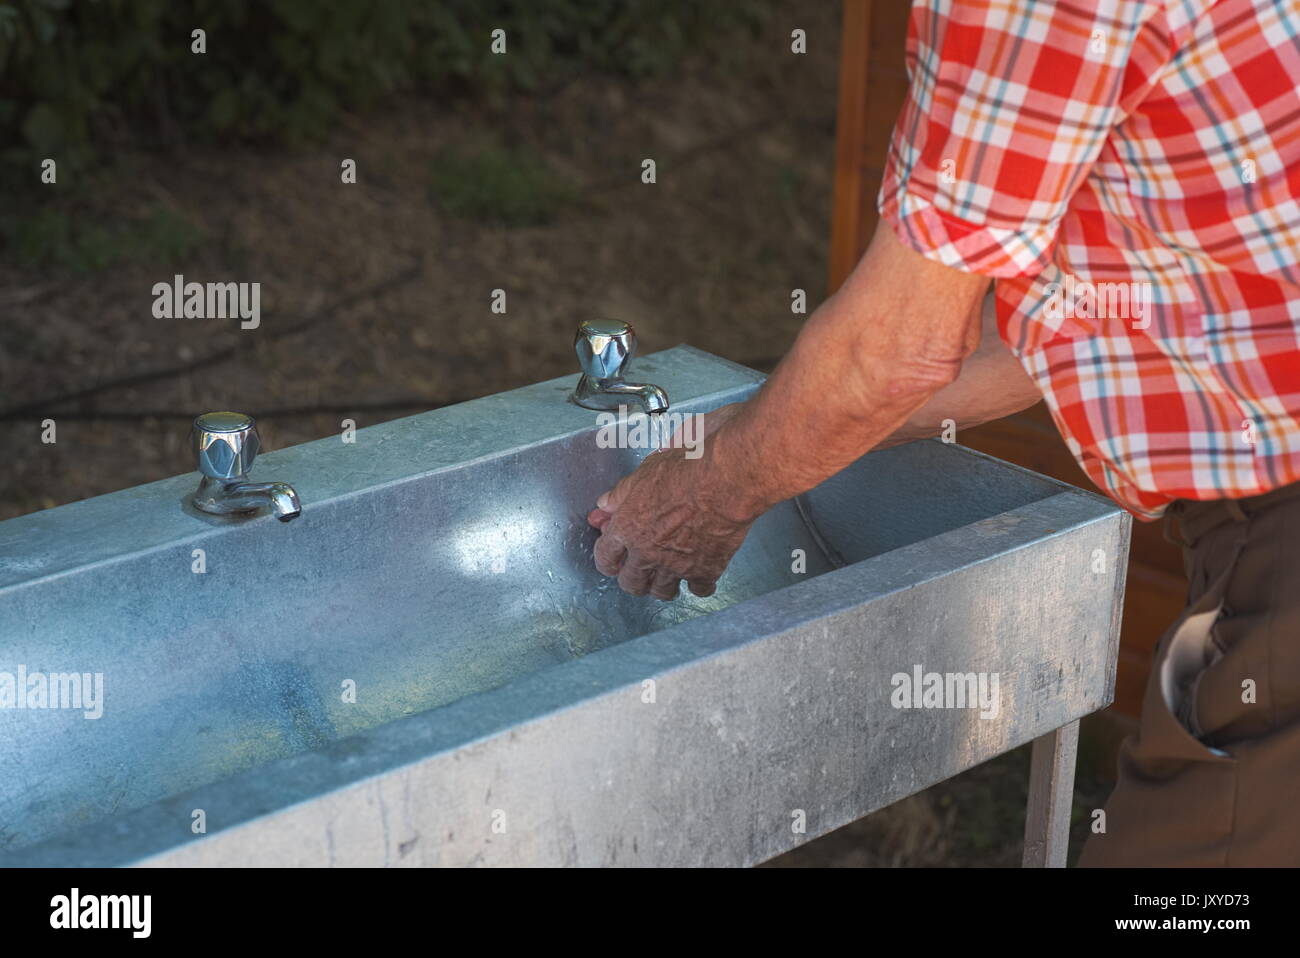 Alter Mann in kariertem Hemd waschen seine Hände im Freien Stockfoto